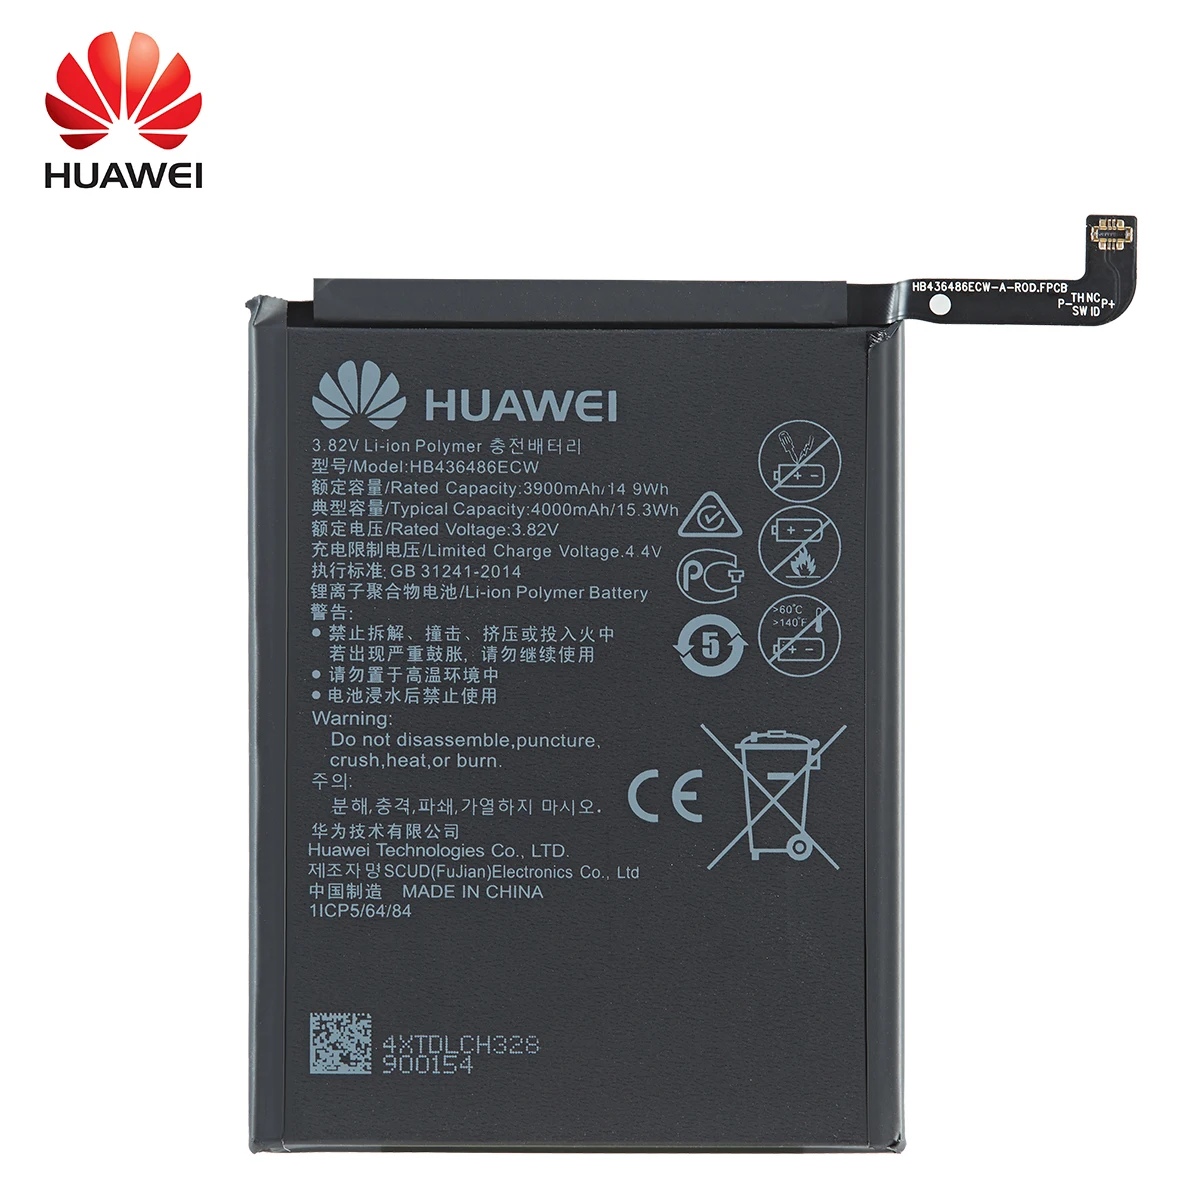 הואה-ווי 100% Orginal HB436486ECW 4000 מיליאמפר סוללה עבור Huawei Mate 10 חבר 10 Pro /P20 Pro AL00 L09 L29 TL00 החלפת הסוללות - 1